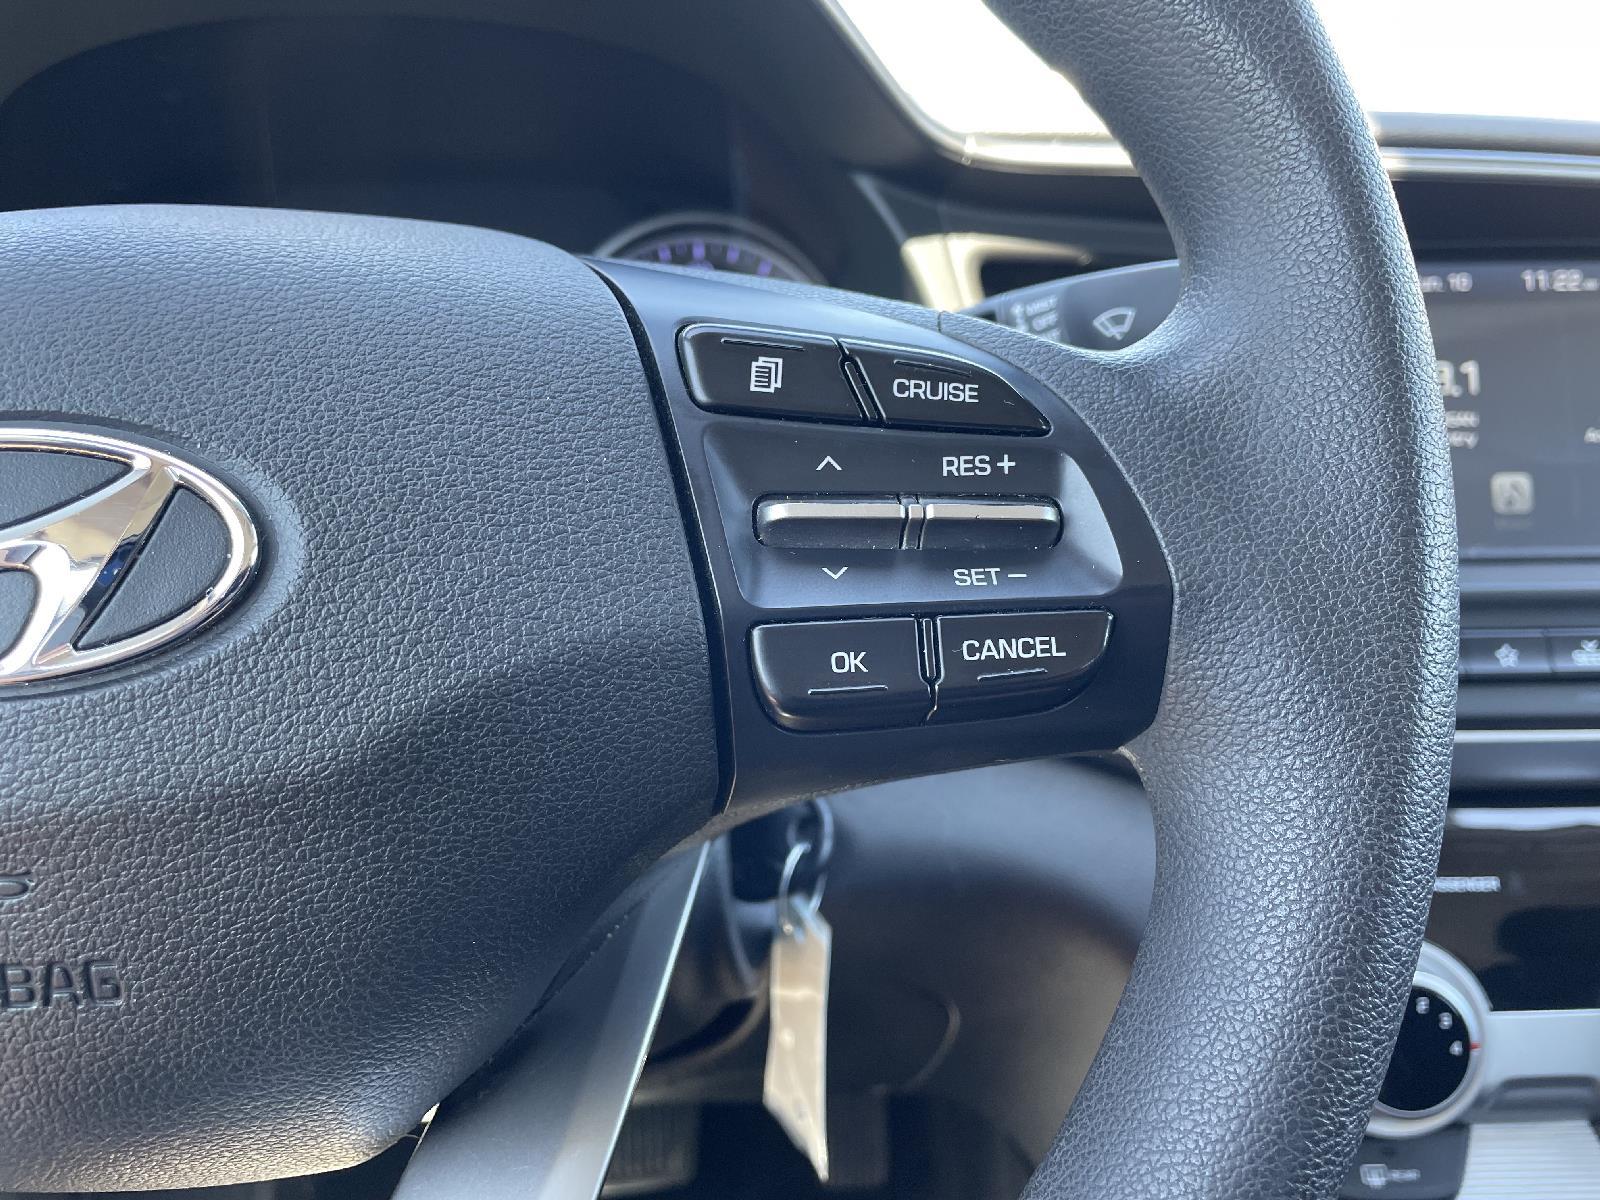 Used 2019 Hyundai Elantra SEL Sedan for sale in Lincoln NE